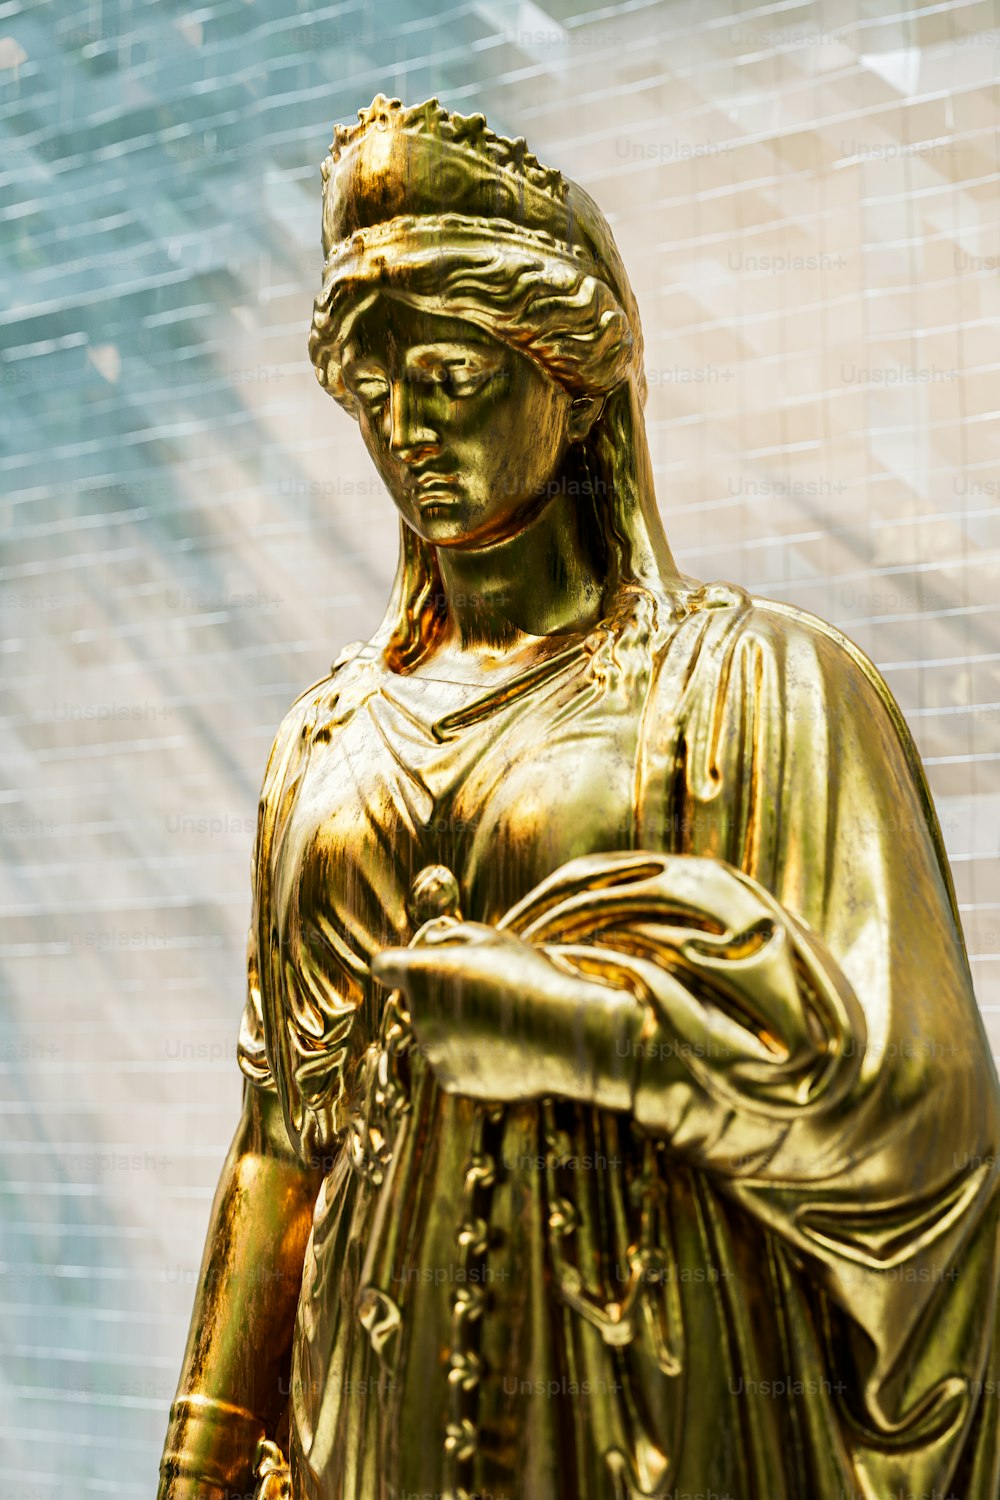 휴대폰을 들고 있는 여성의 동상